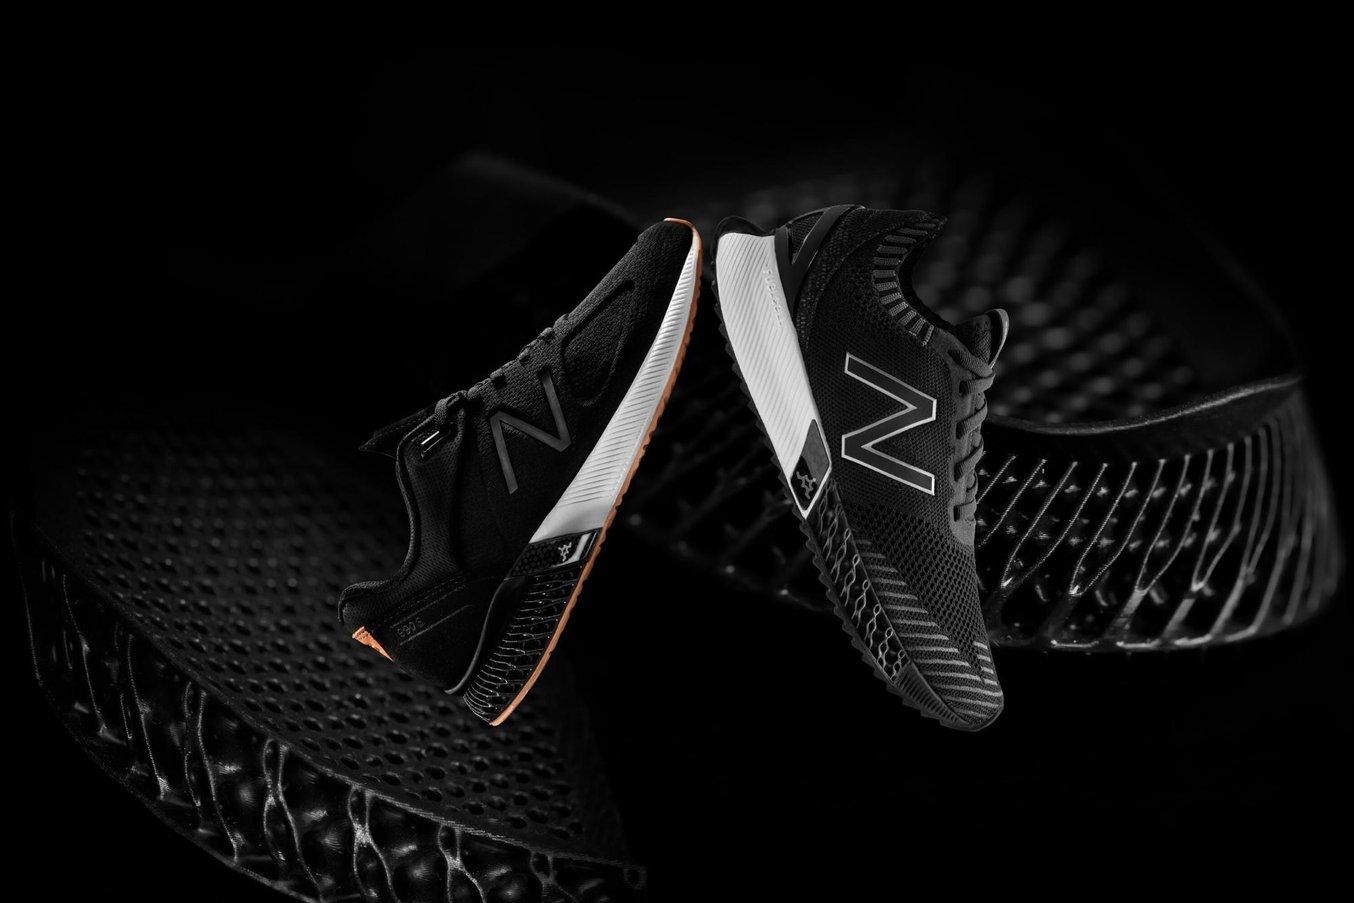 New Balance colaboró con Formlabs para desarrollar un material completamente nuevo desde cero para zapatos personalizados de alto rendimiento con una entresuela diseñada generativamente.